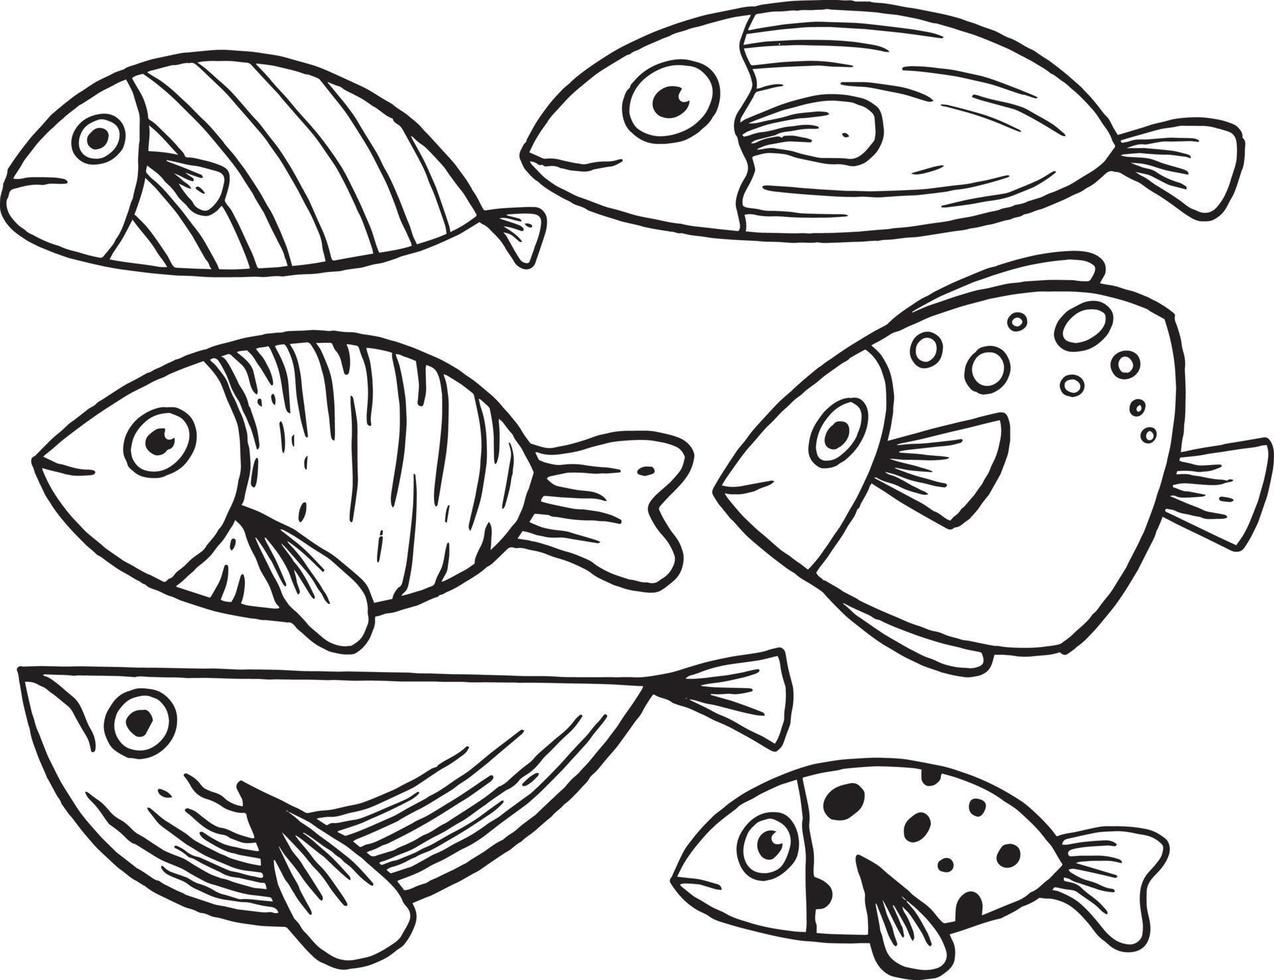 sammlung handgezeichnete fische doodle kinder illustration für aufkleber poster etc vektor